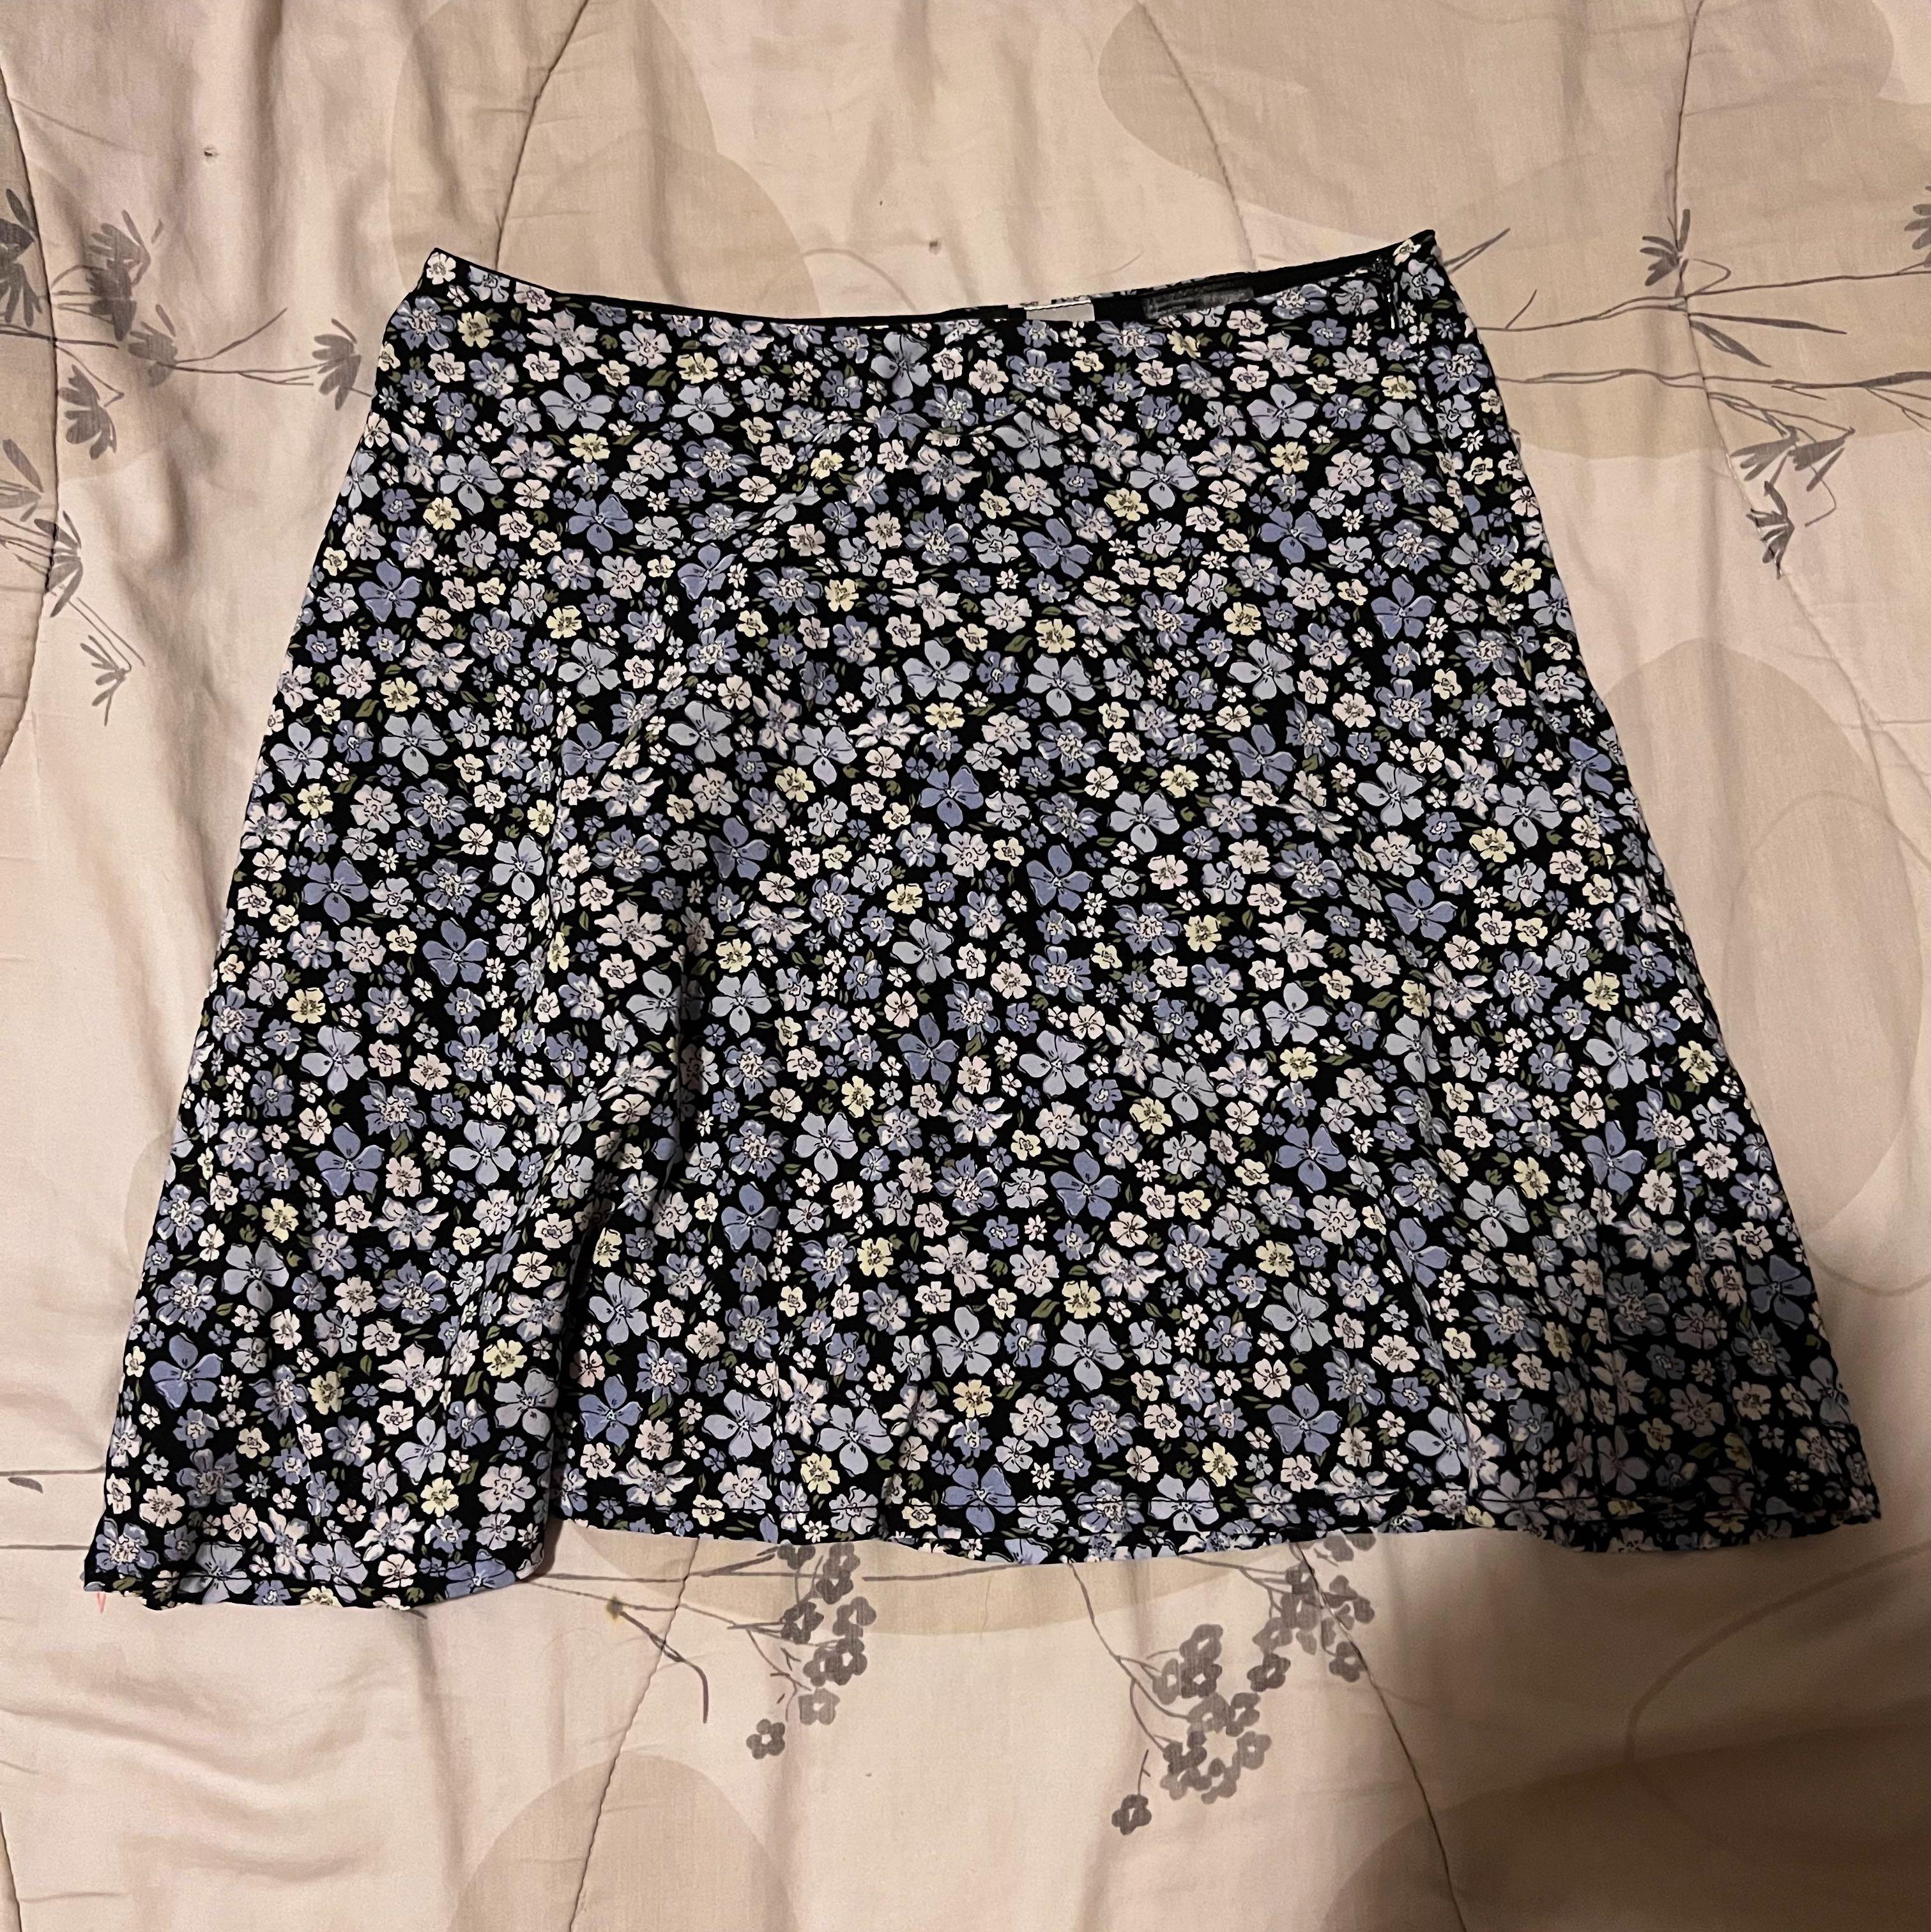 Pastel Flower Skirt, Floral Mini Skirt, Floral Skirt